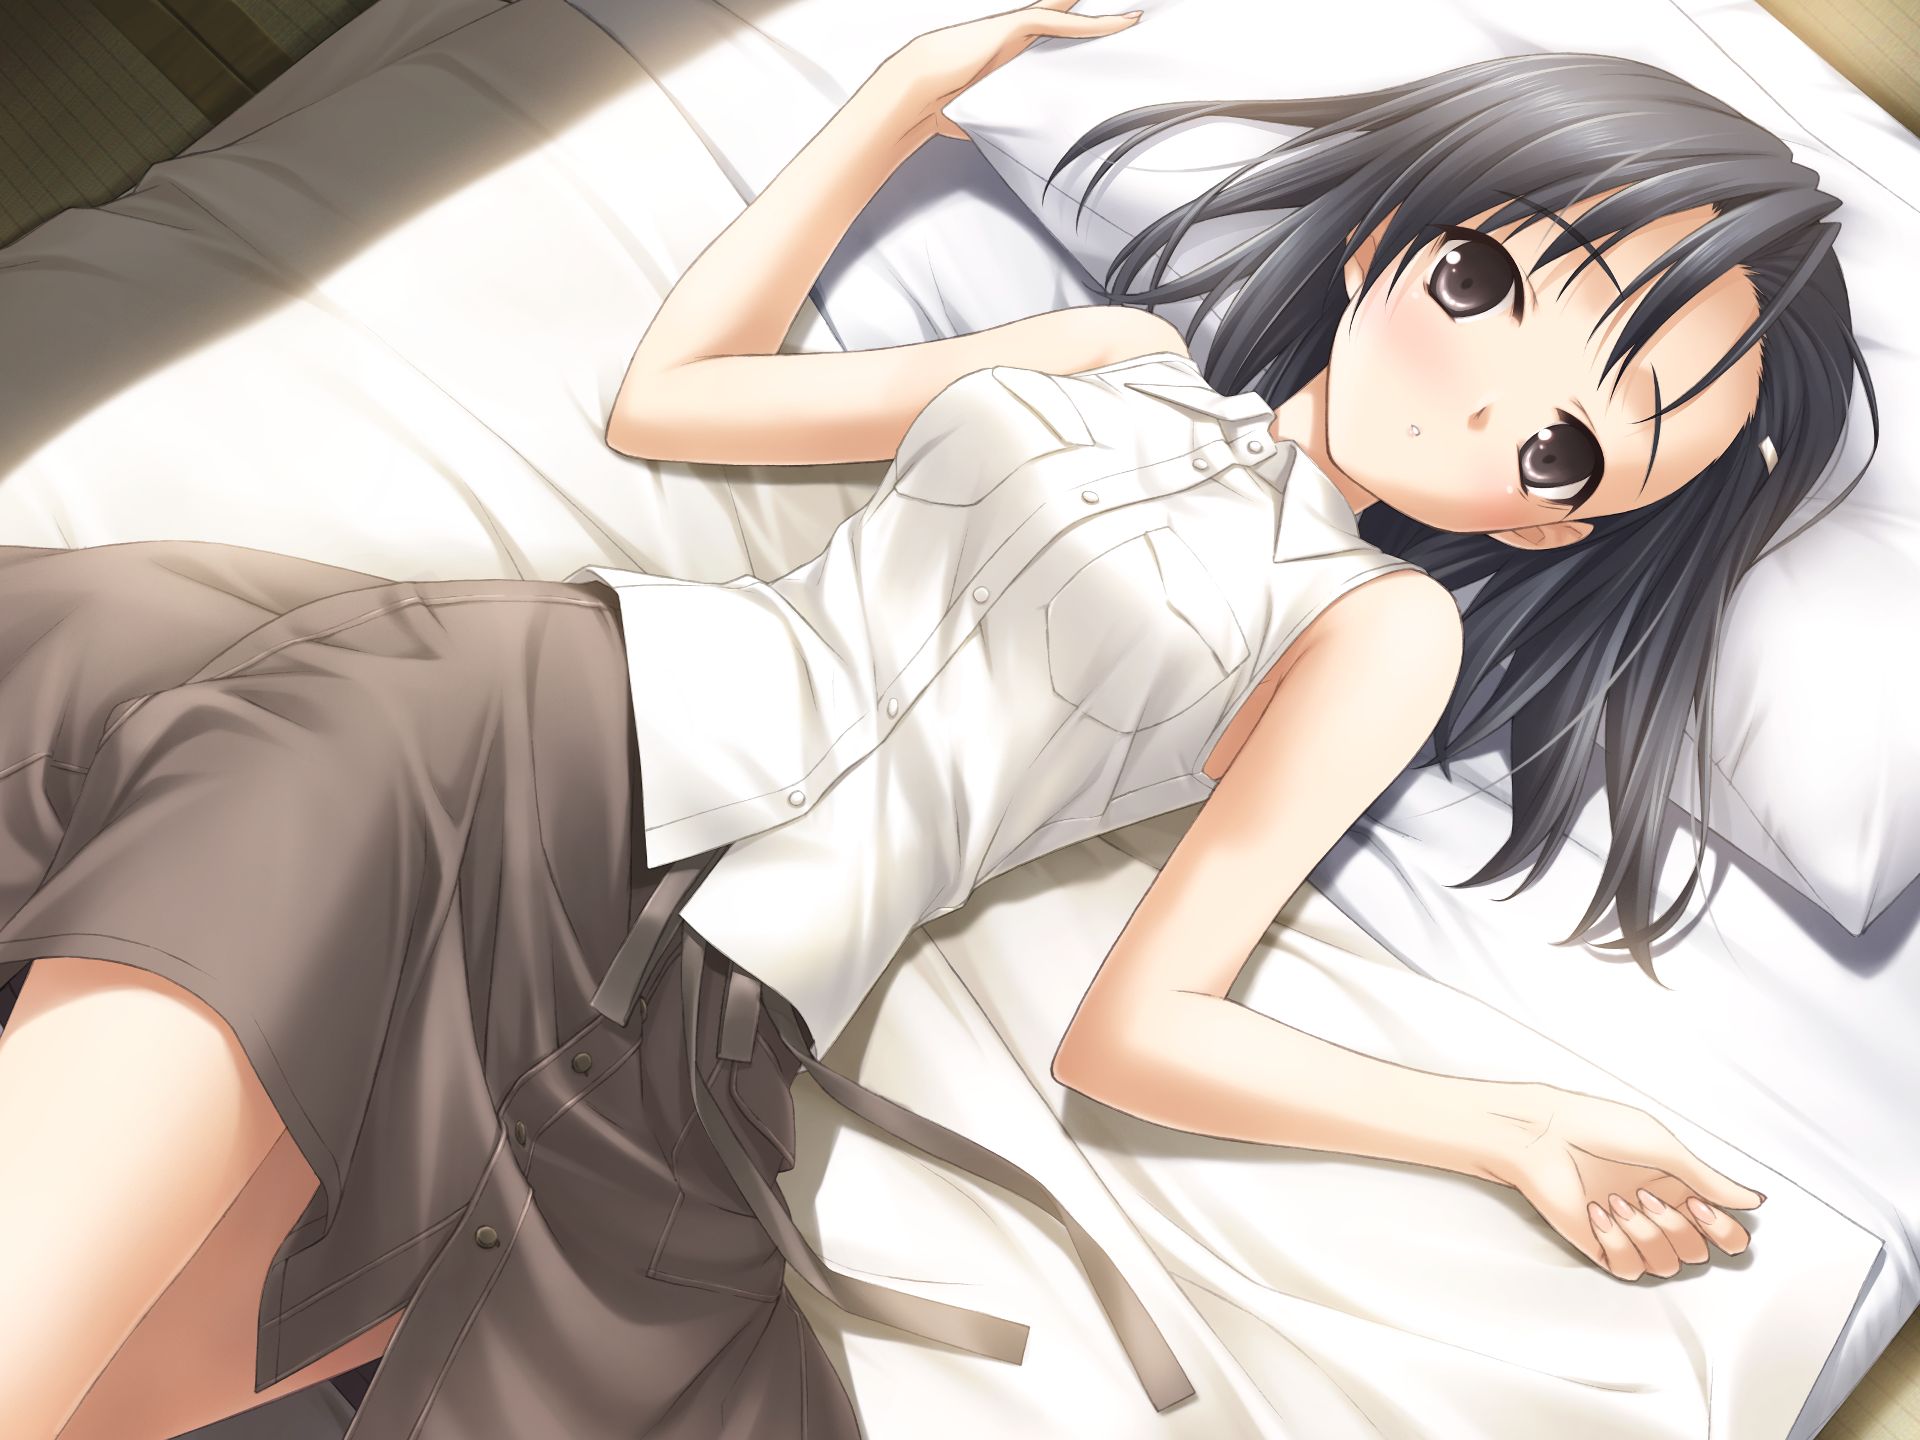 Yosuga no Sora аниме кровать